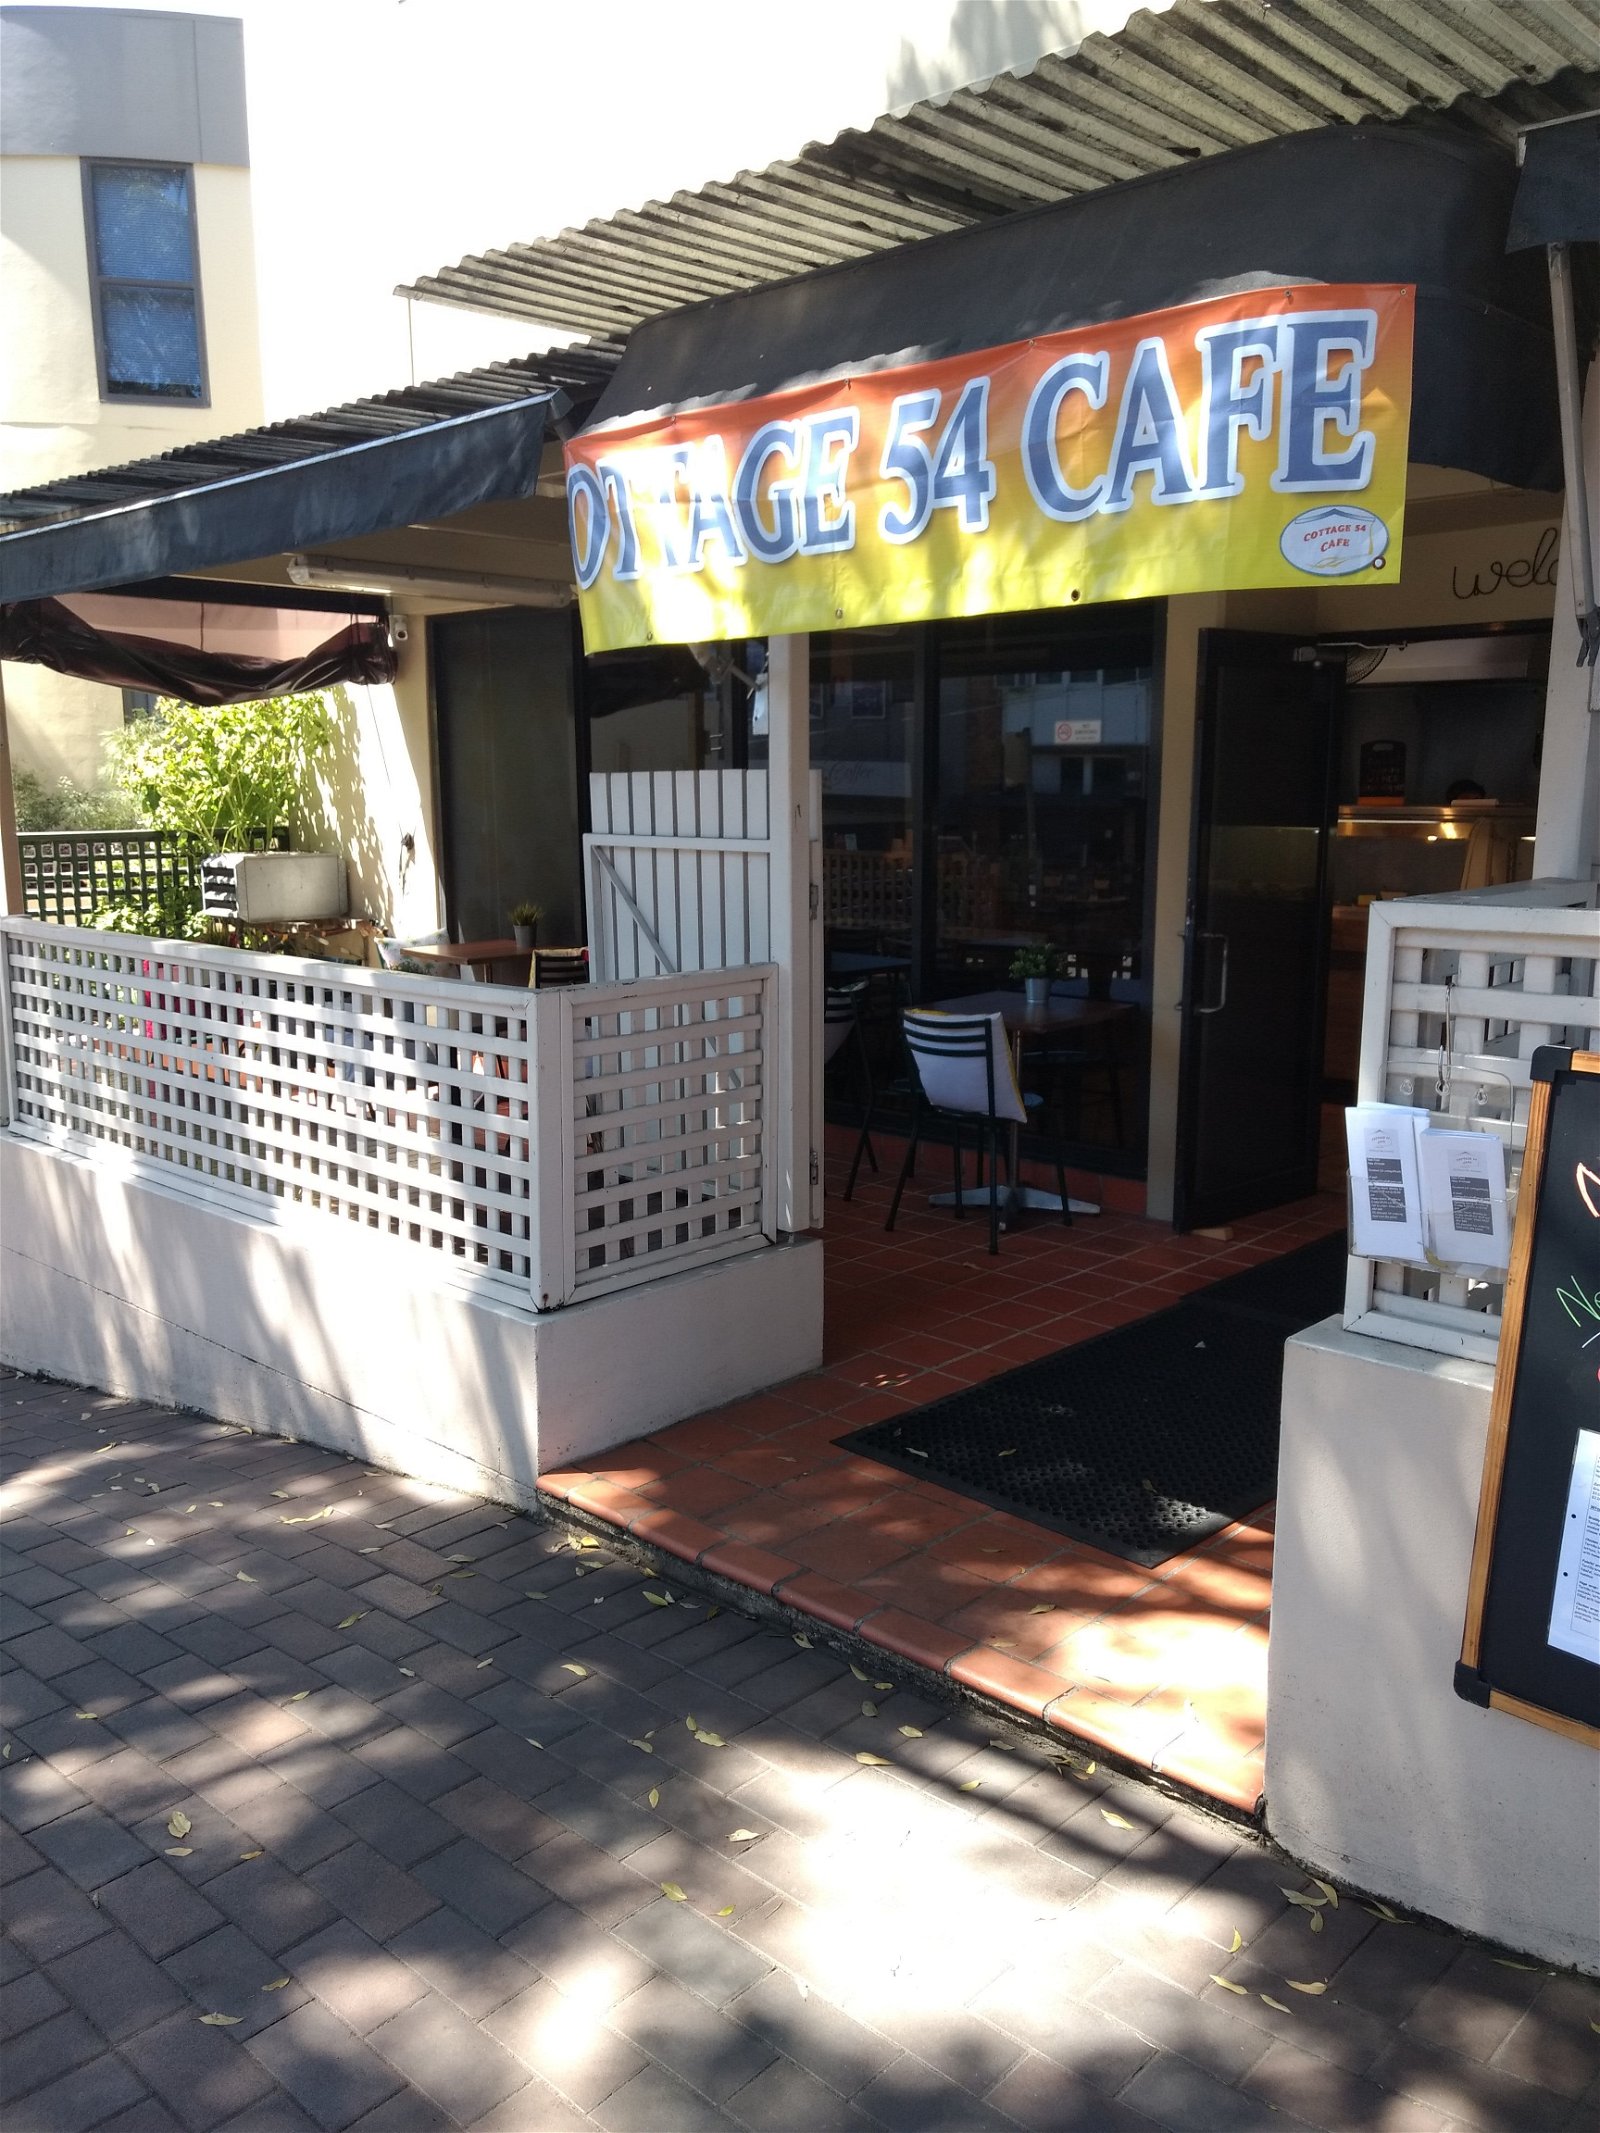 Cottage 54 Cafe - Pubs Sydney